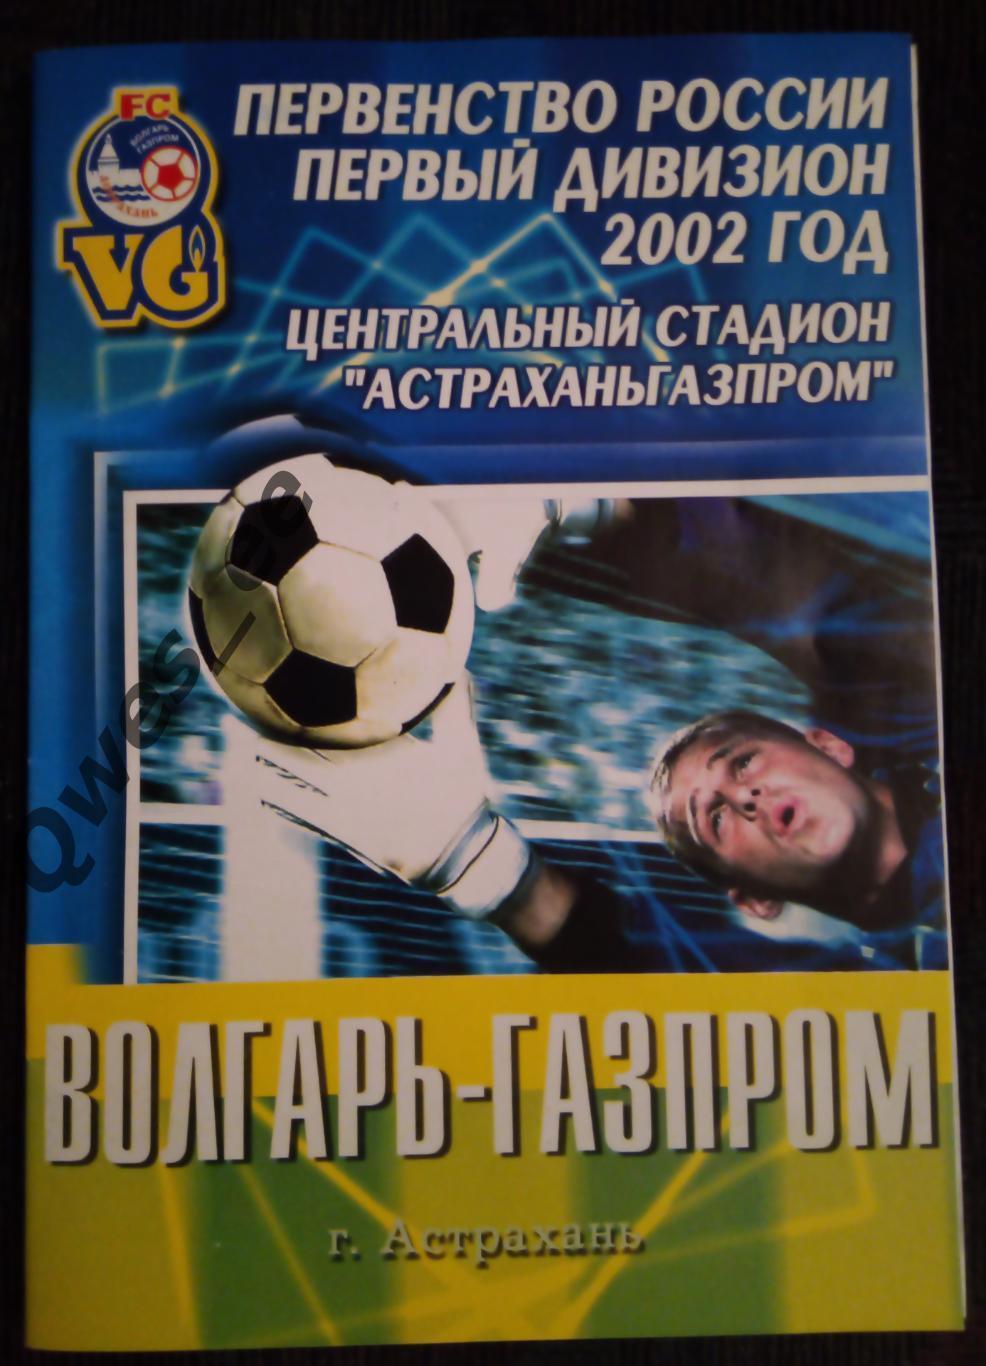 Волгарь Газпром Астрахань Металлург Красноярск 1 октября 2002